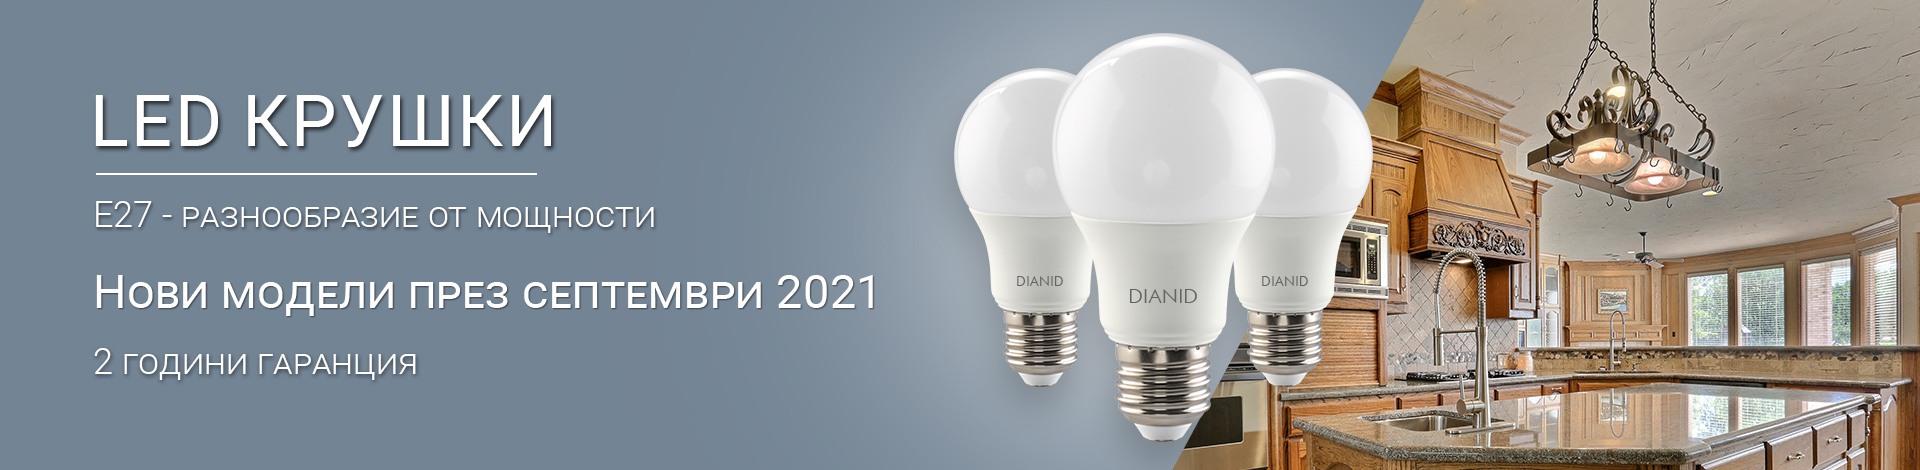 Нови модели LED крушки E27 от Дианид